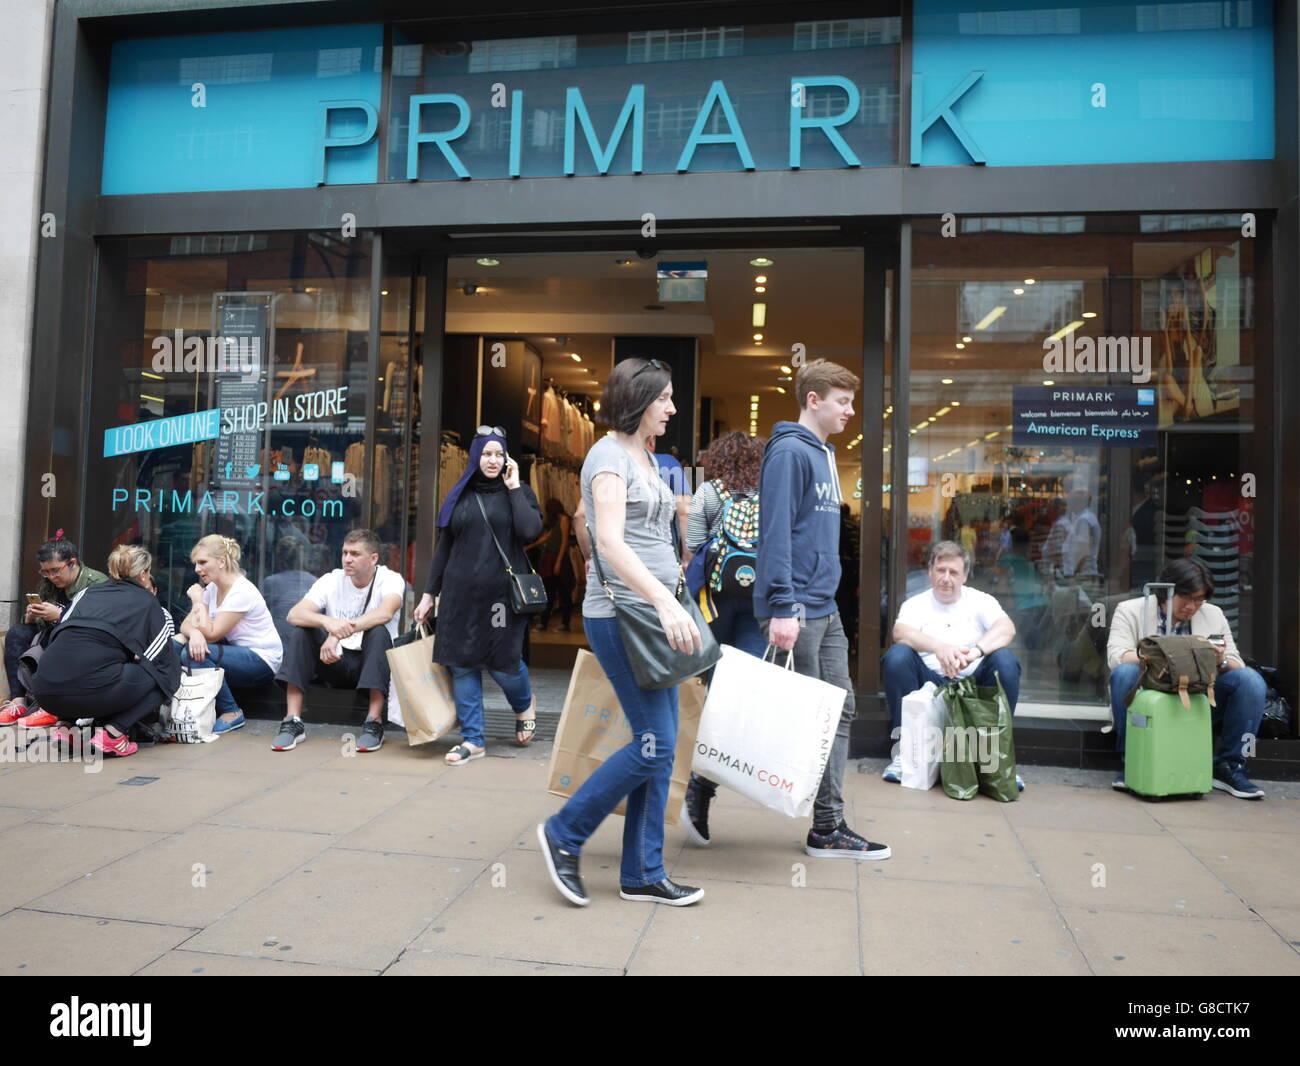 Primark Retail shop Oxford Street London Stock Photo